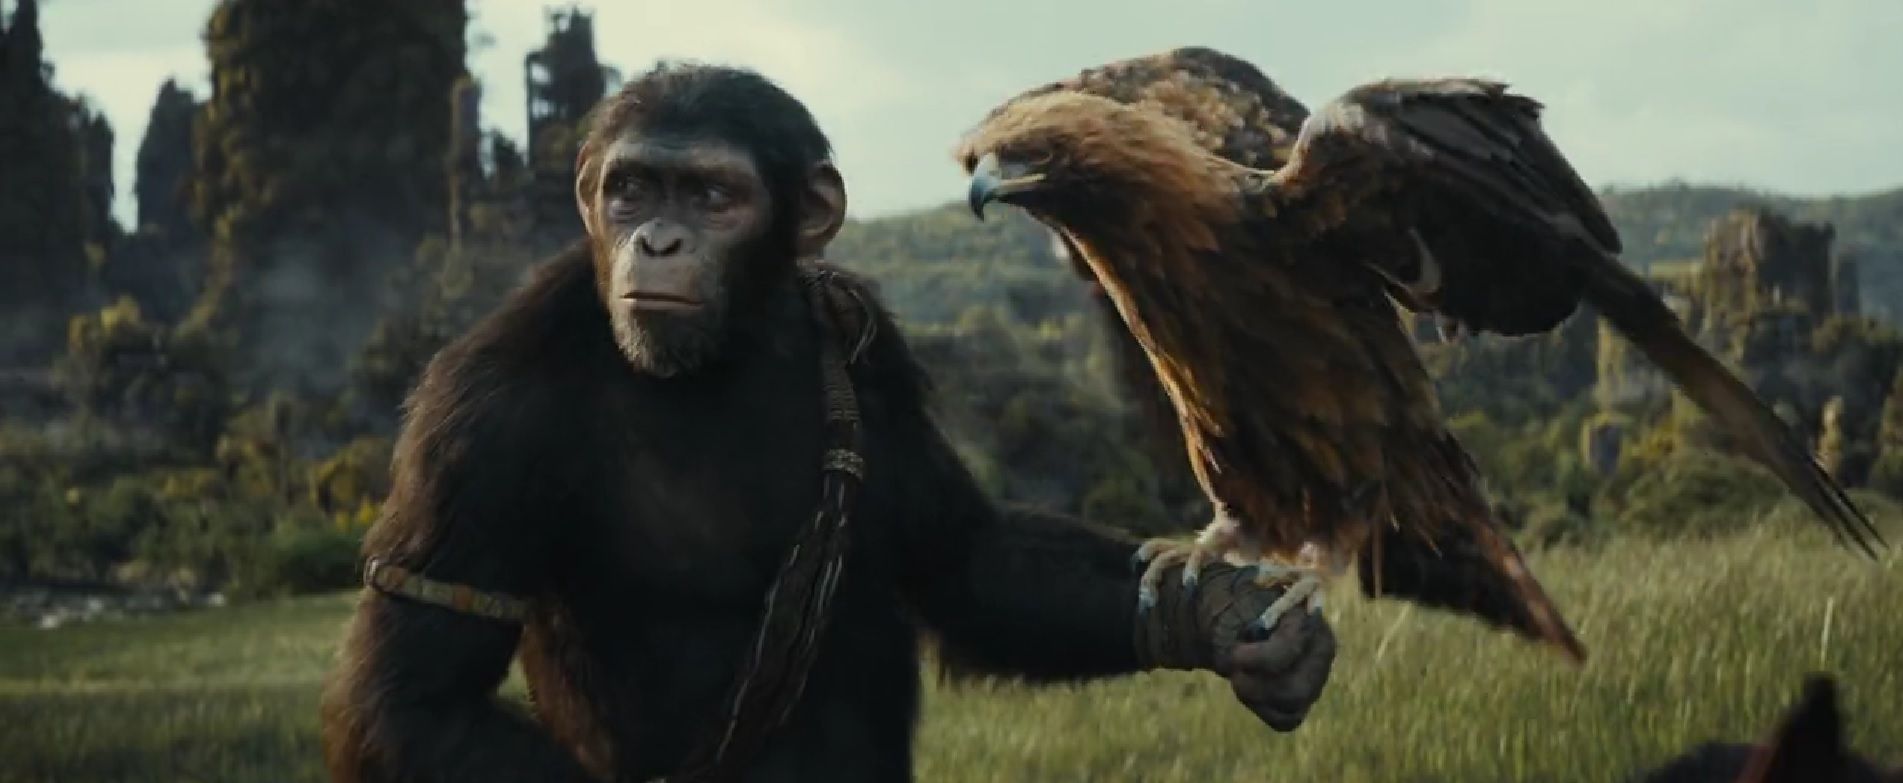 Королевство планеты обезьян получило высокий рейтинг на Rotten Tomatoes